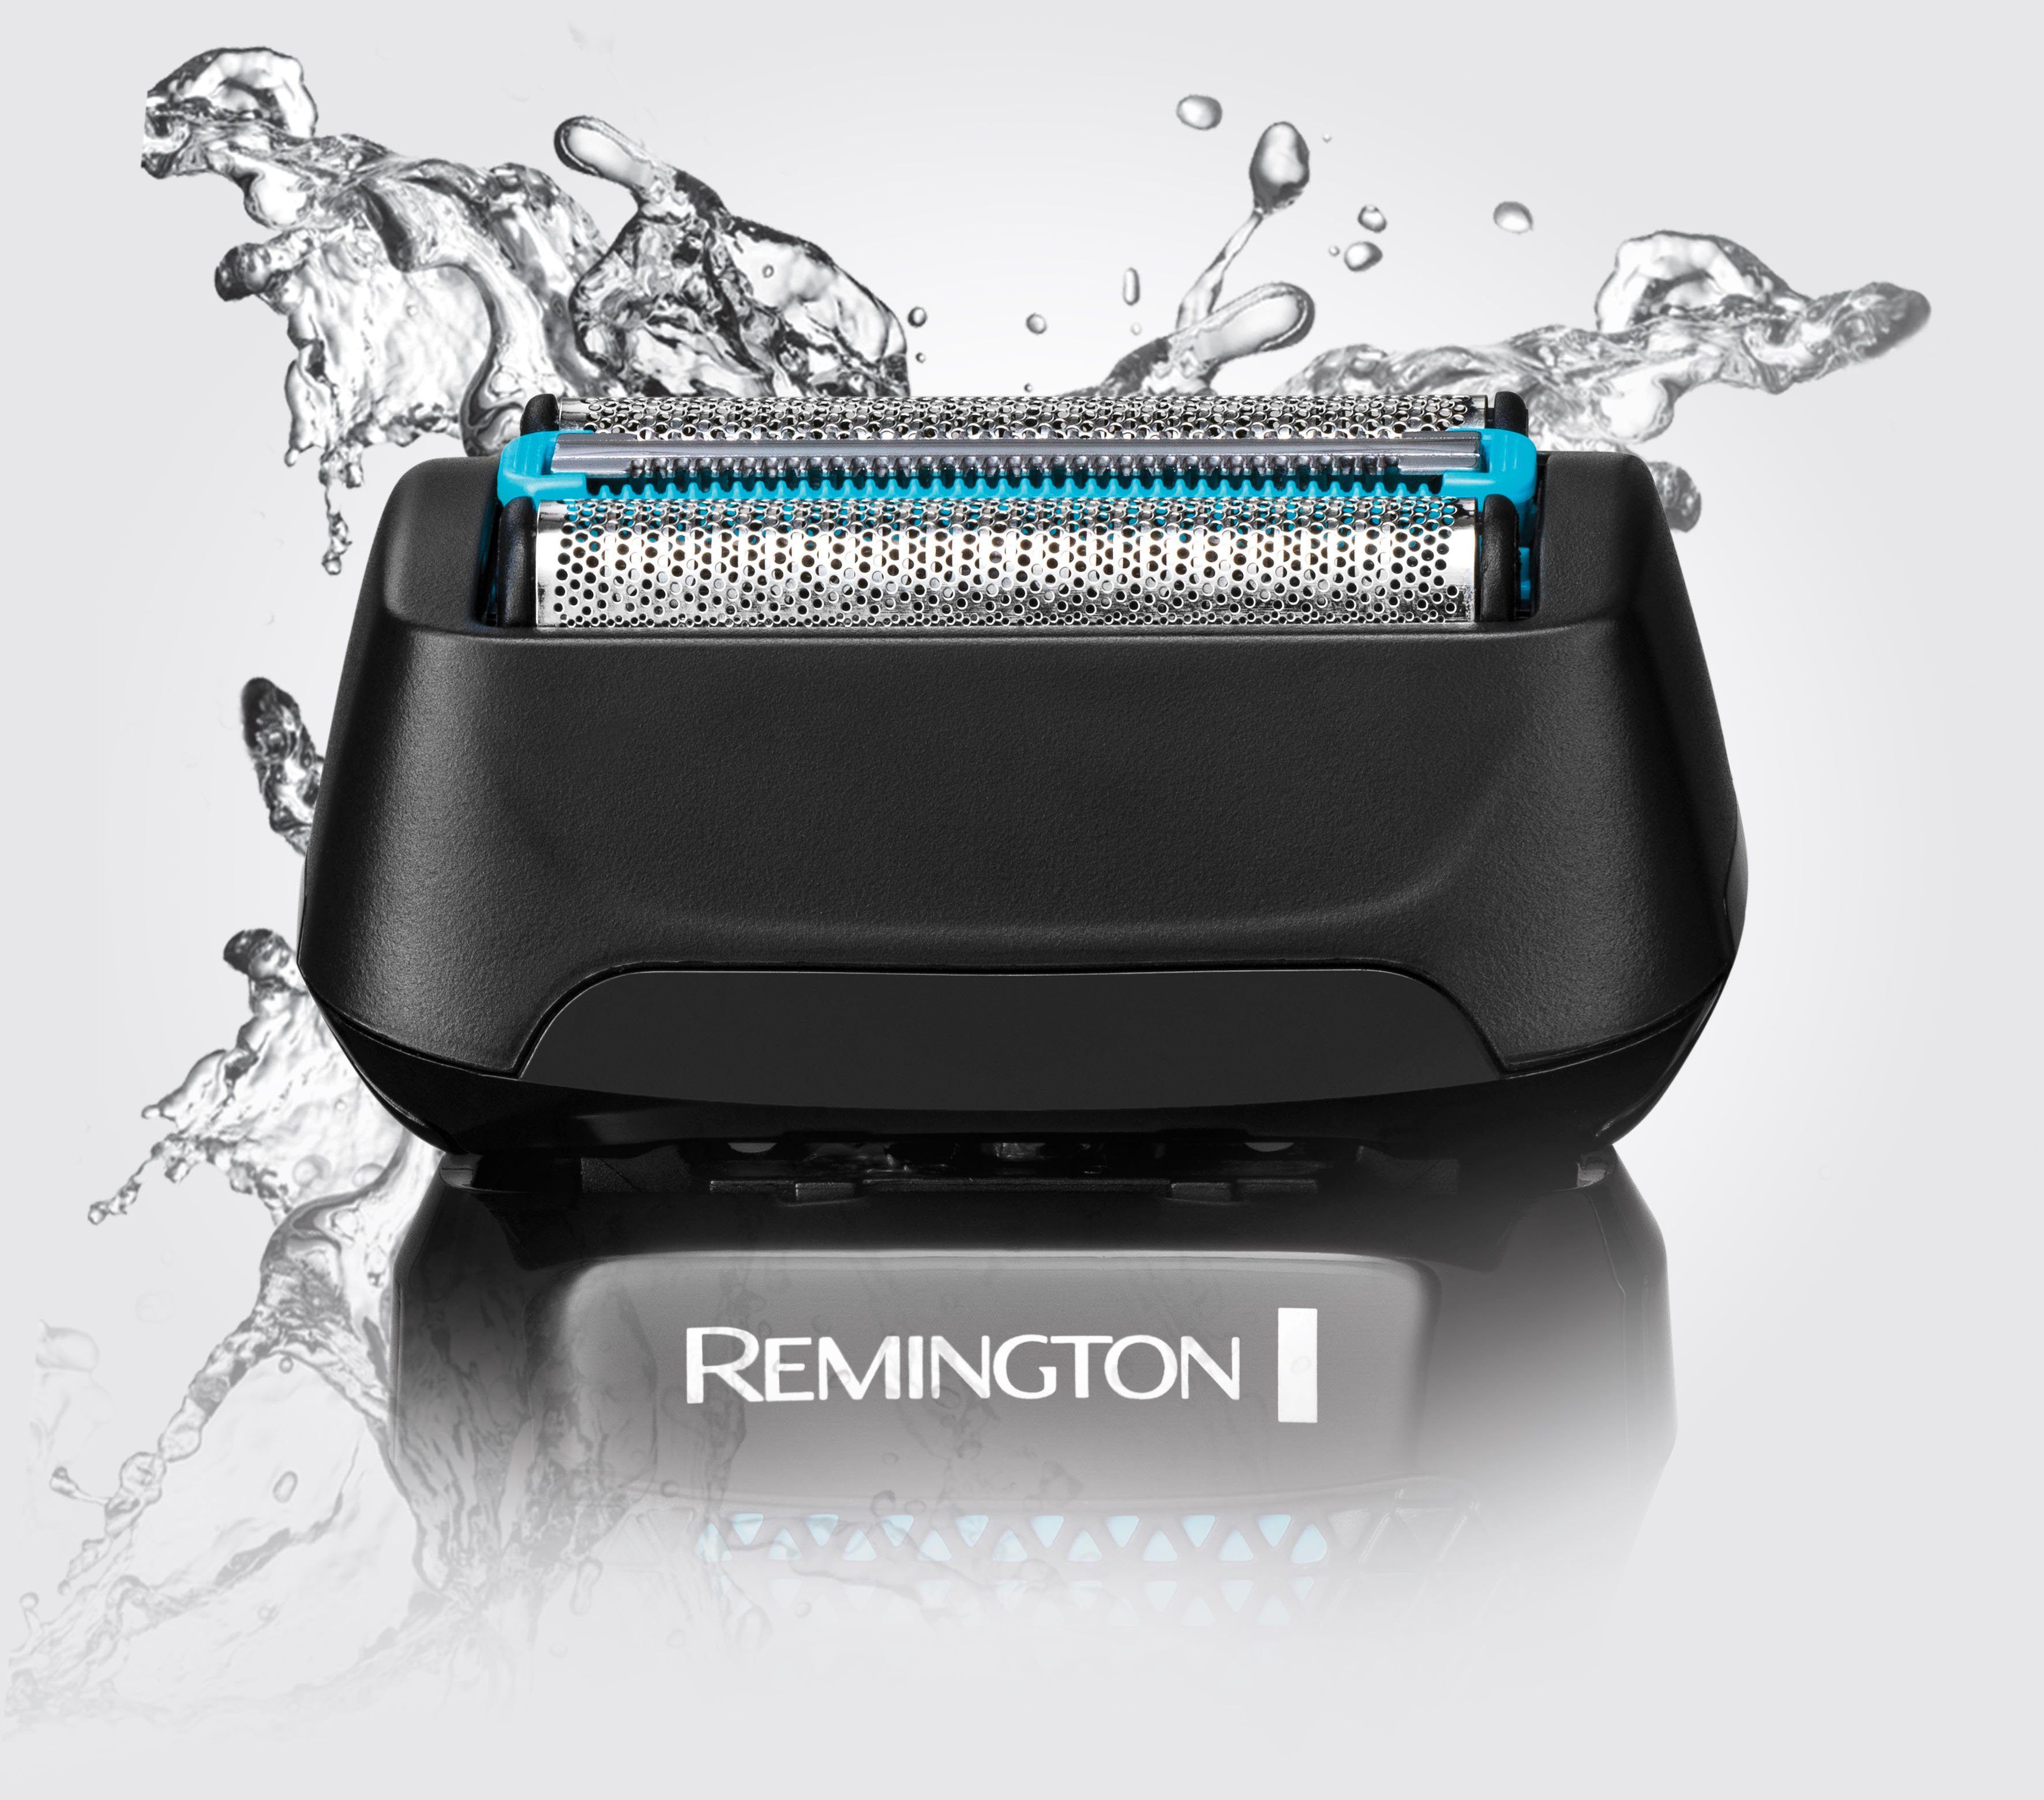 Remington Elektrorasierer F6000 Style Wasserdichtes Aufsätze: Langhaartrimmer, wasserdicht, % 1, Rasiersystem, 3-Tage-Bart 100 & Trockenrasur, Styler Nass mit